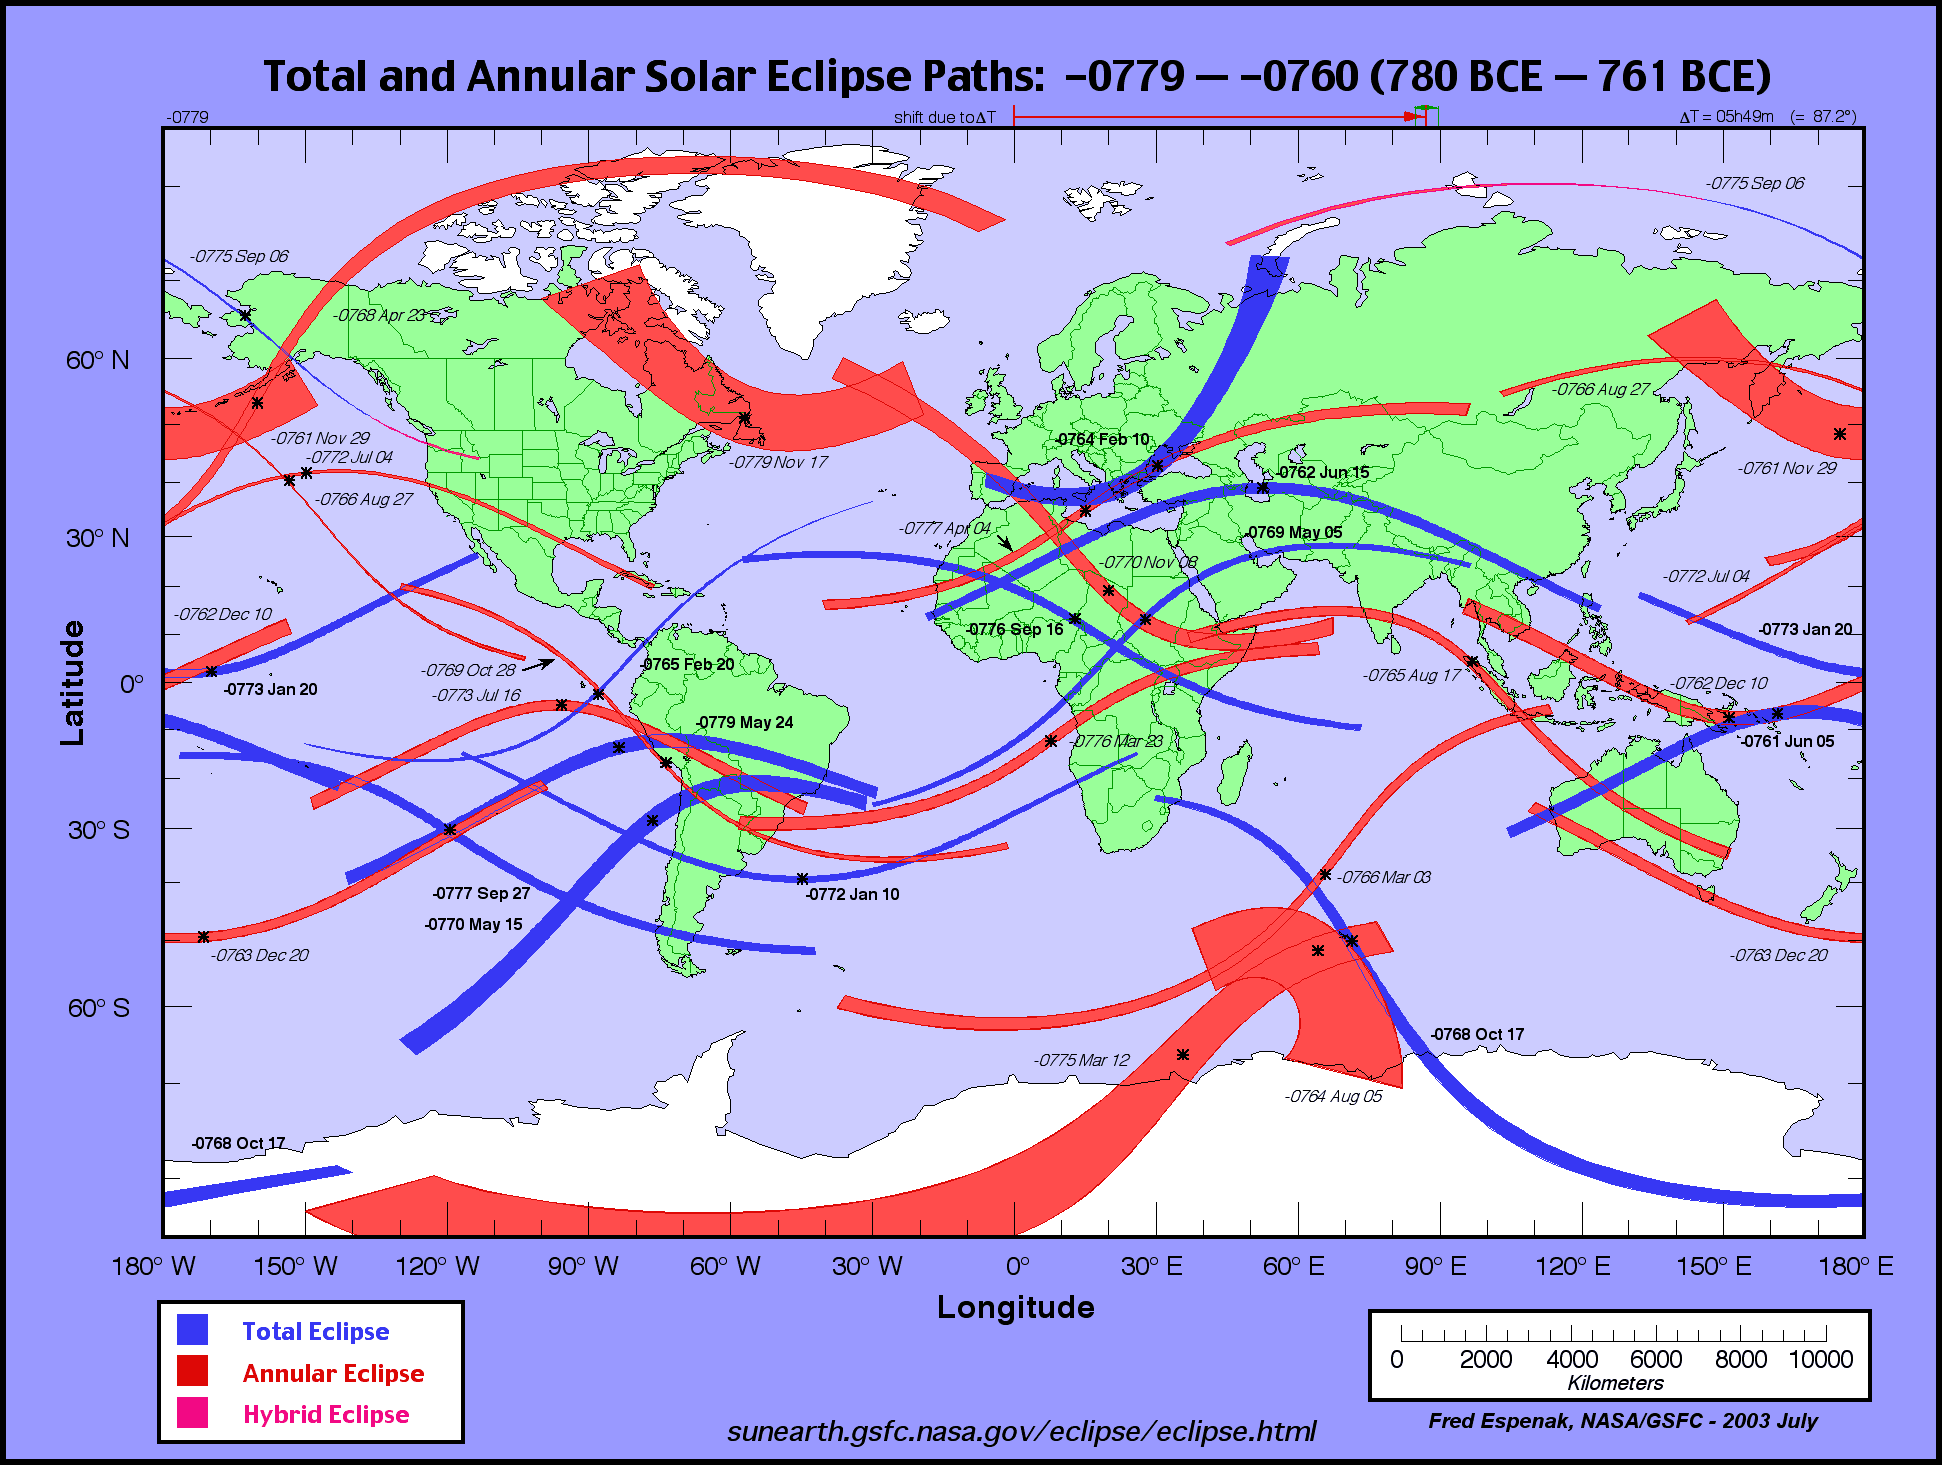 http://eclipse.gsfc.nasa.gov/SEatlas/SEatlas-1/SEatlas-0779.GIF